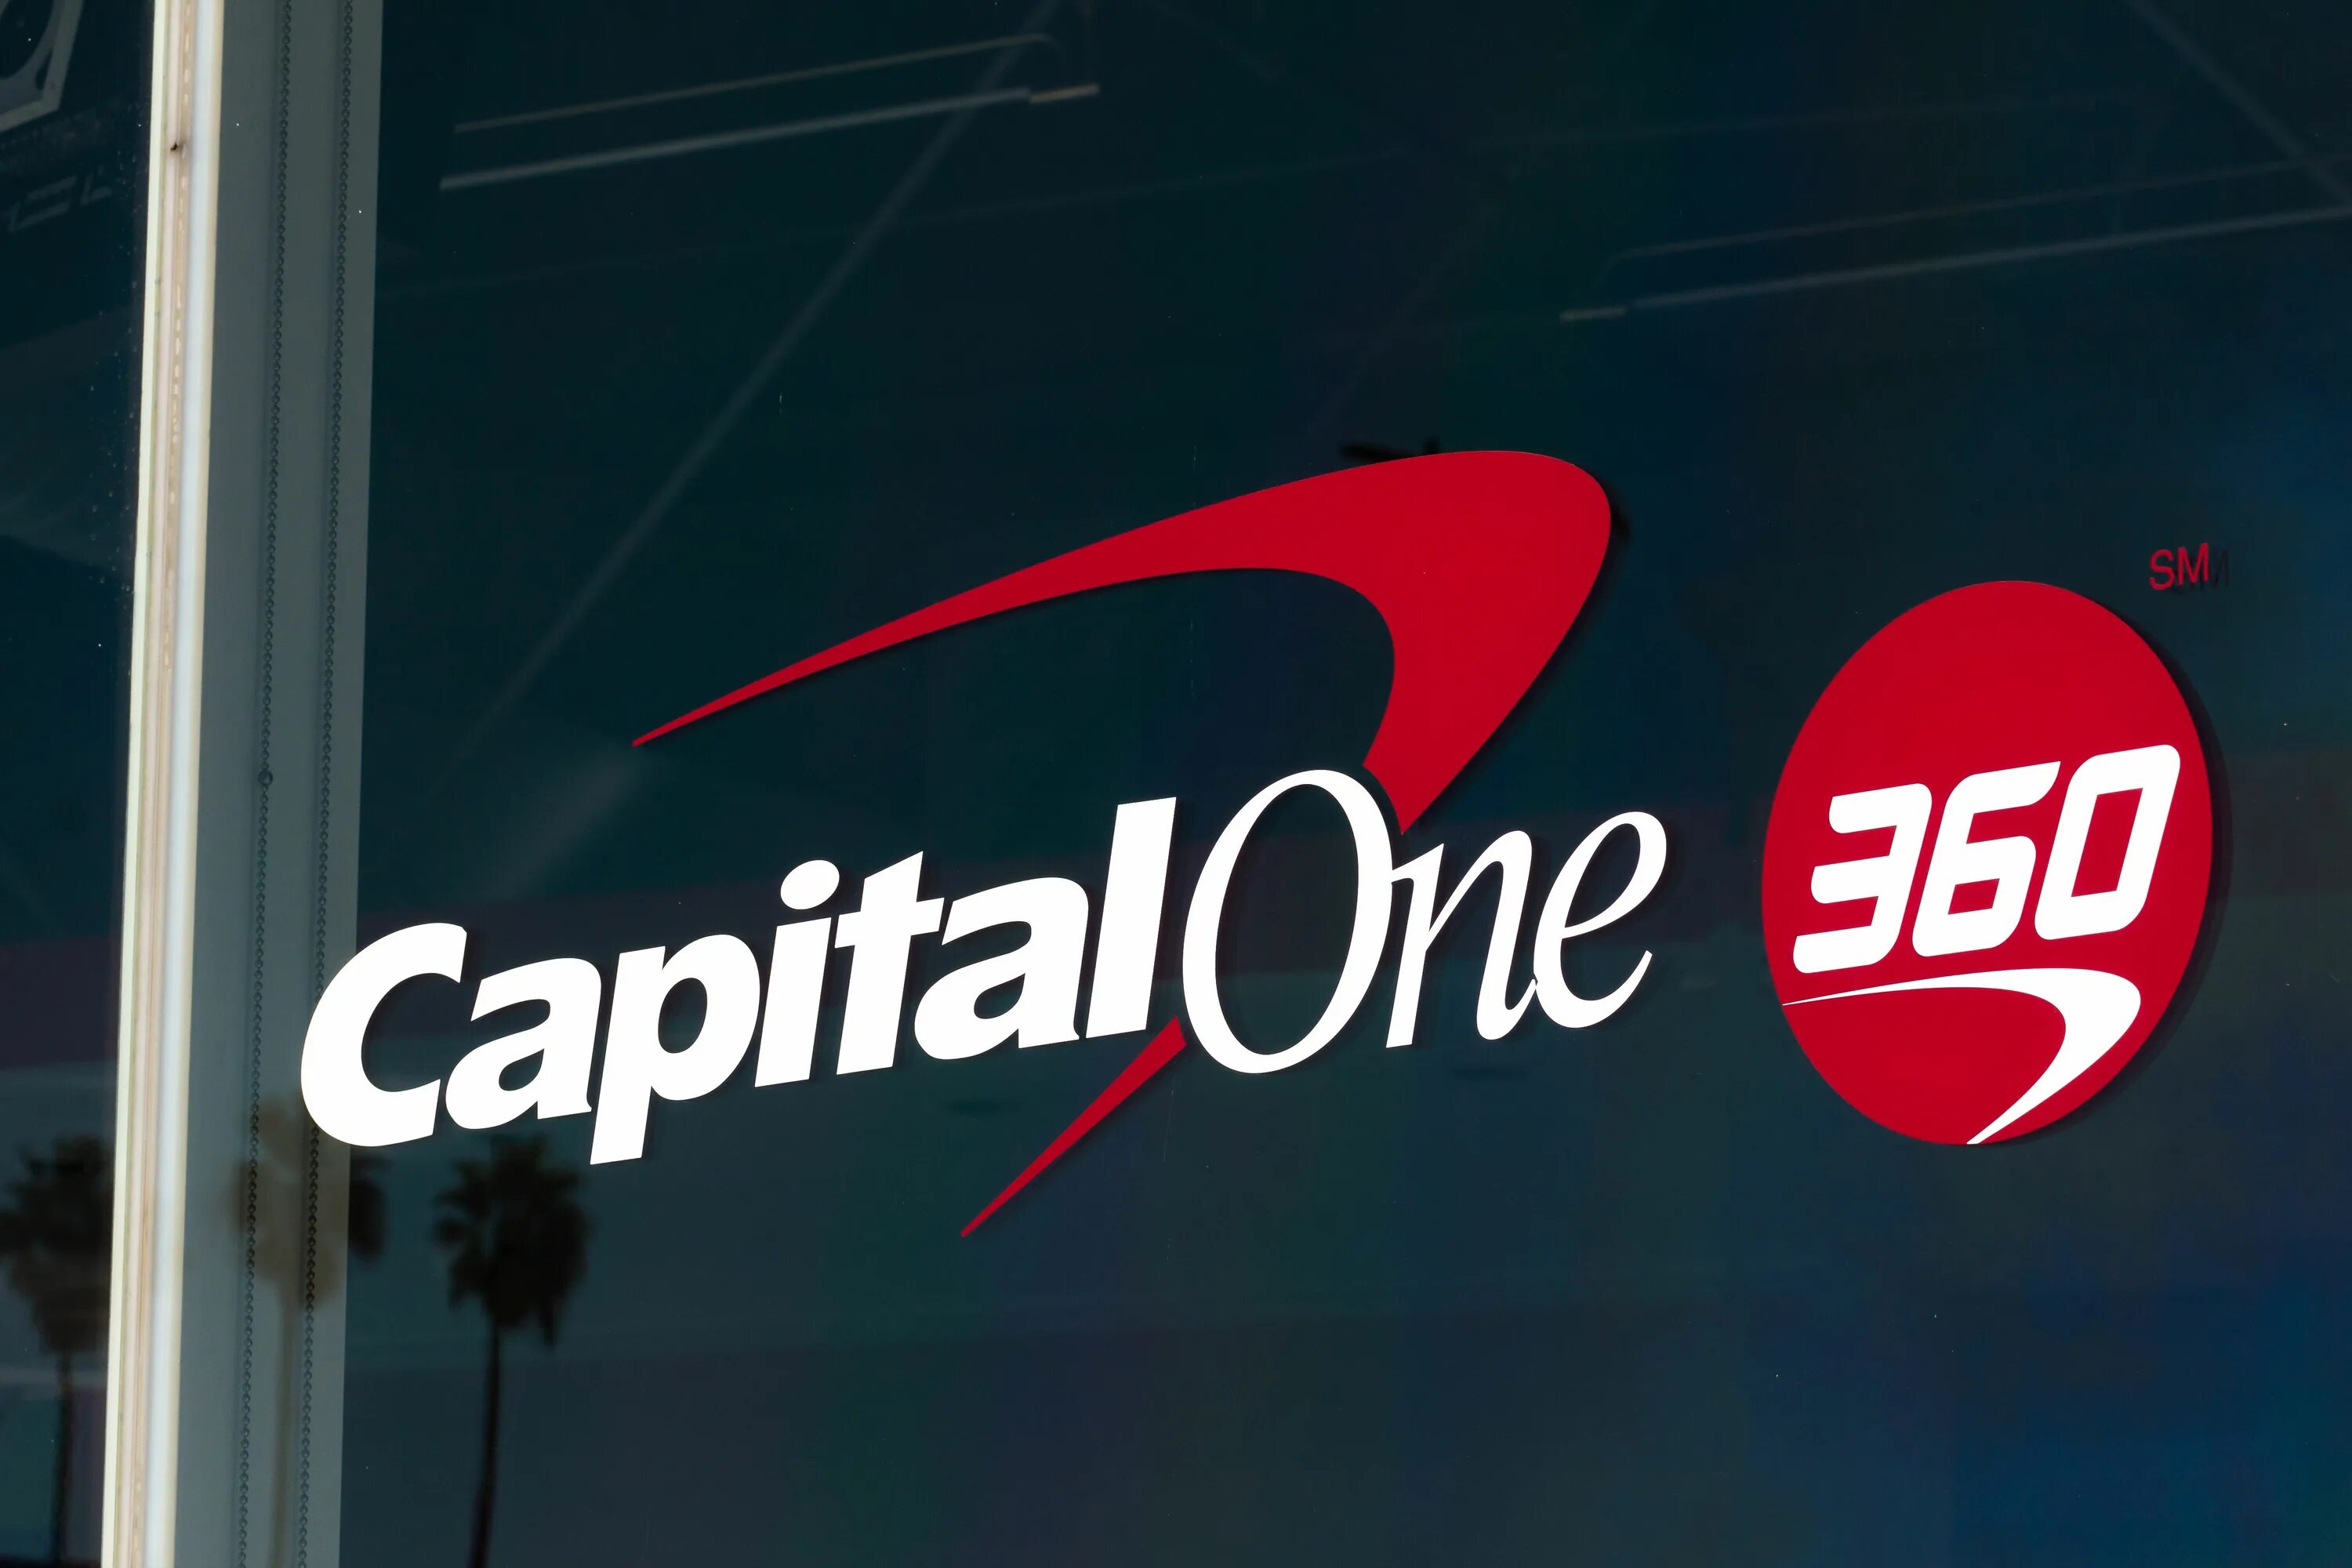 S one capital. Capital one. Capital one savings account Bonus. Letter from Capital one Bank.